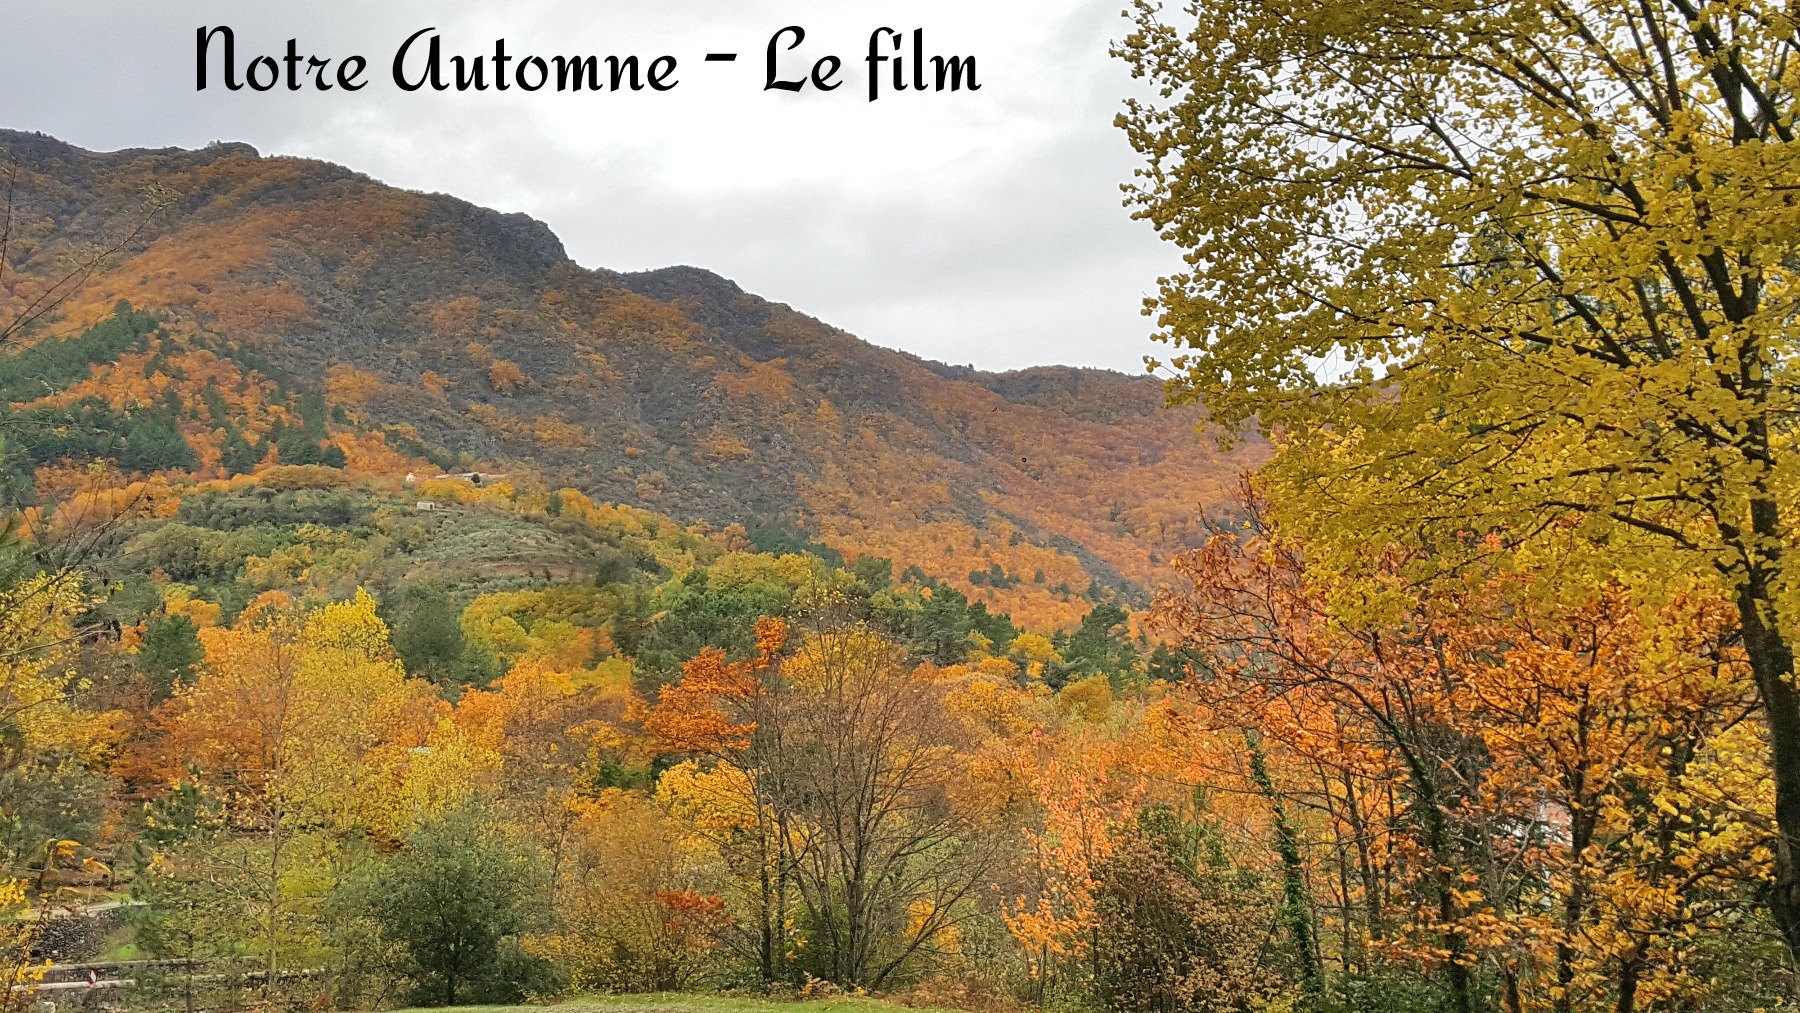 Notre automne – Le film